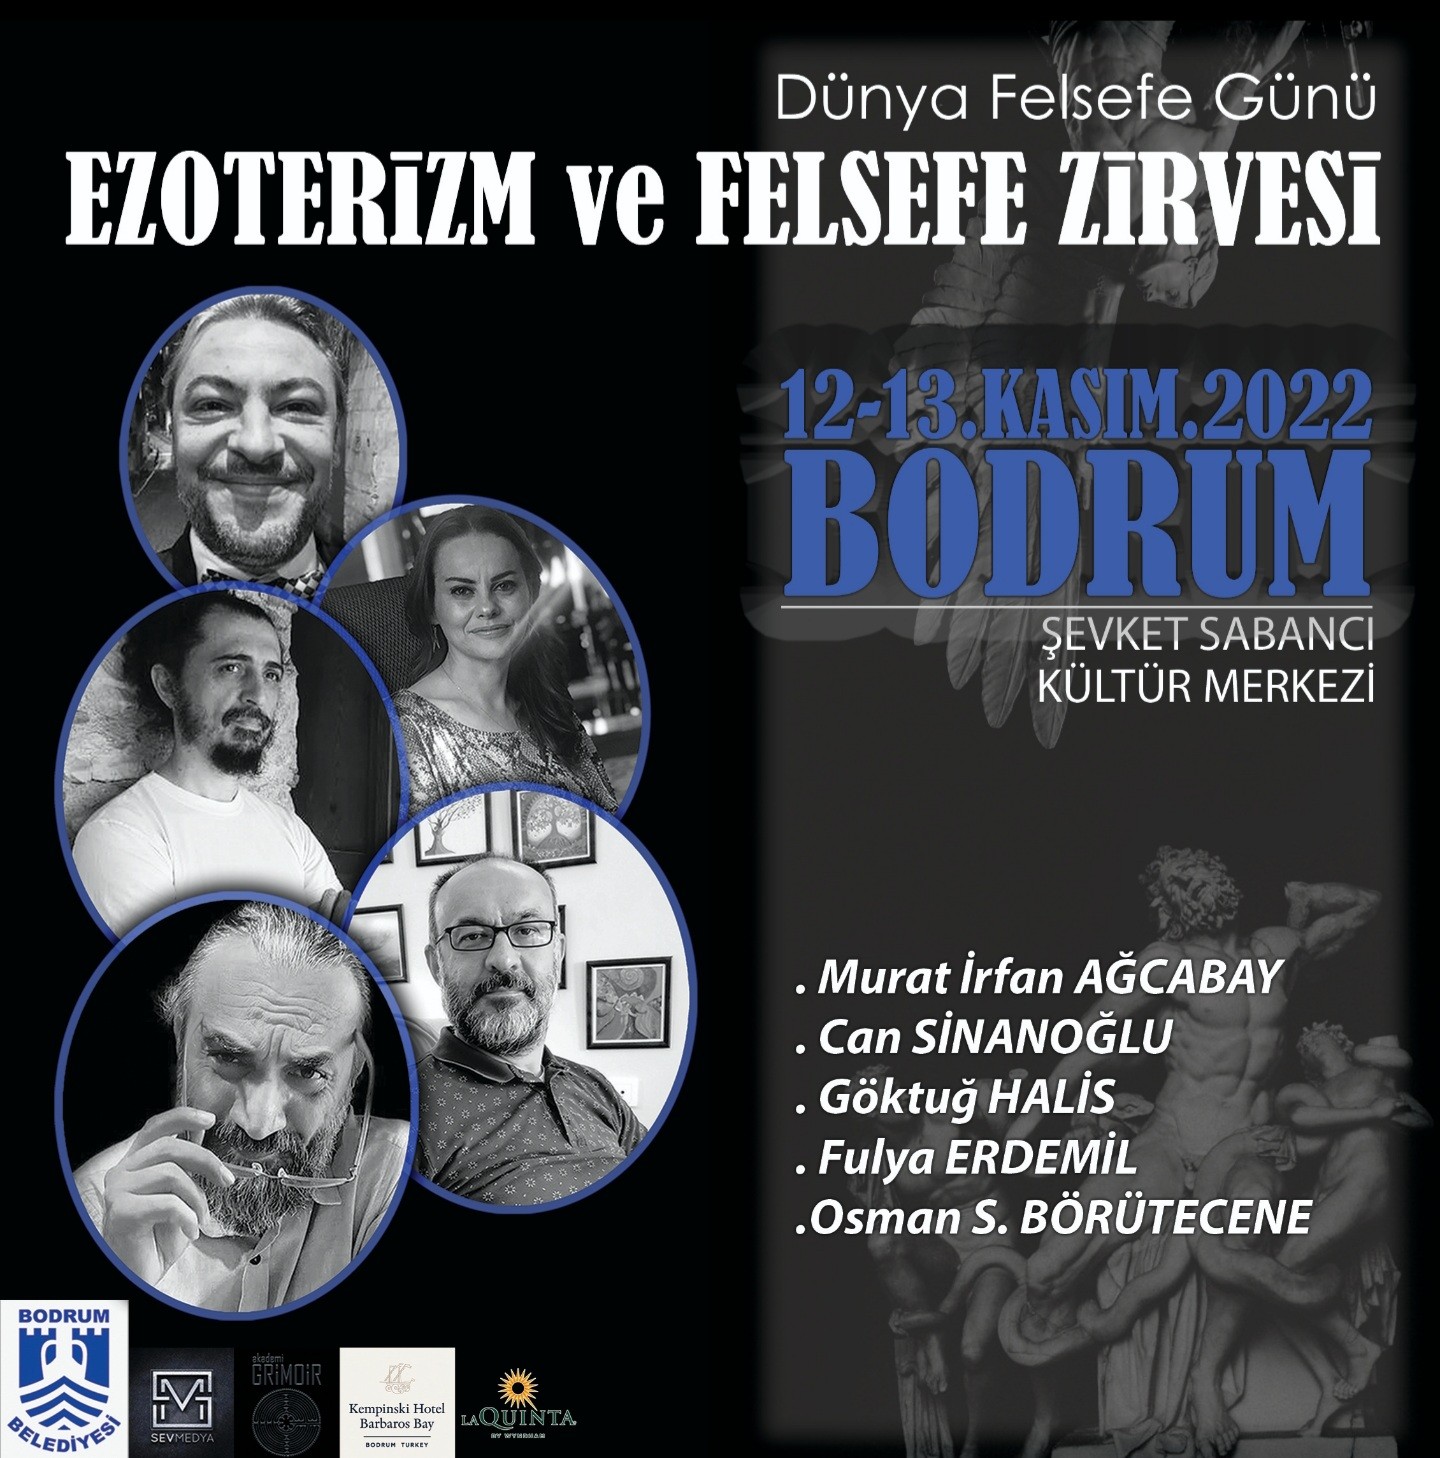 Bodrum'da Ezoterizm ve Felsefe Zirvesi